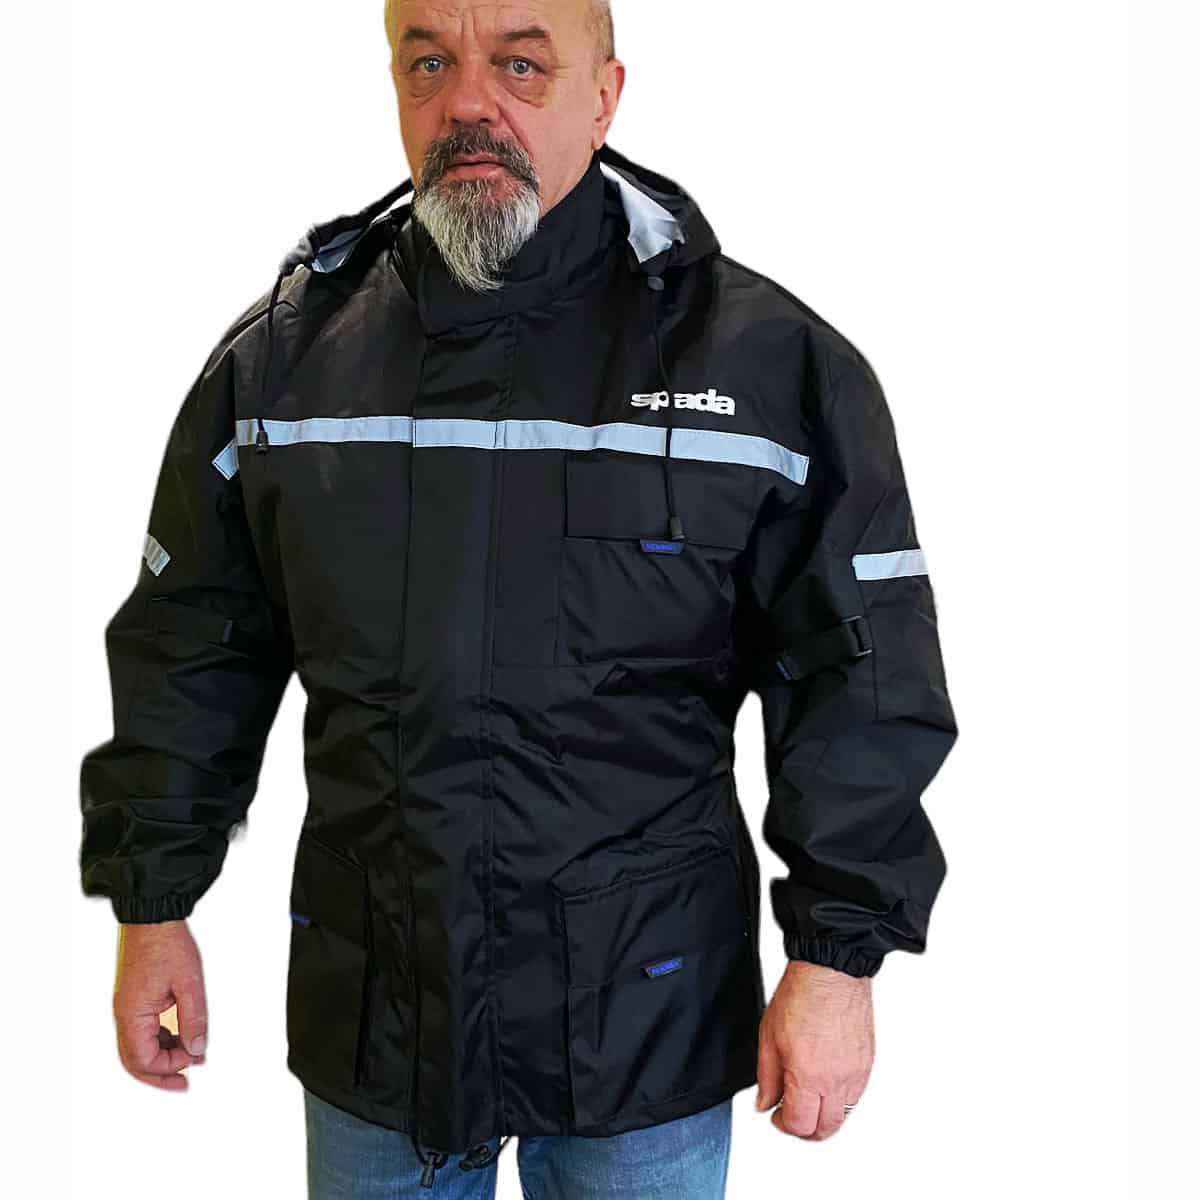 Spada Aqua waterproof Rain Over-jacket